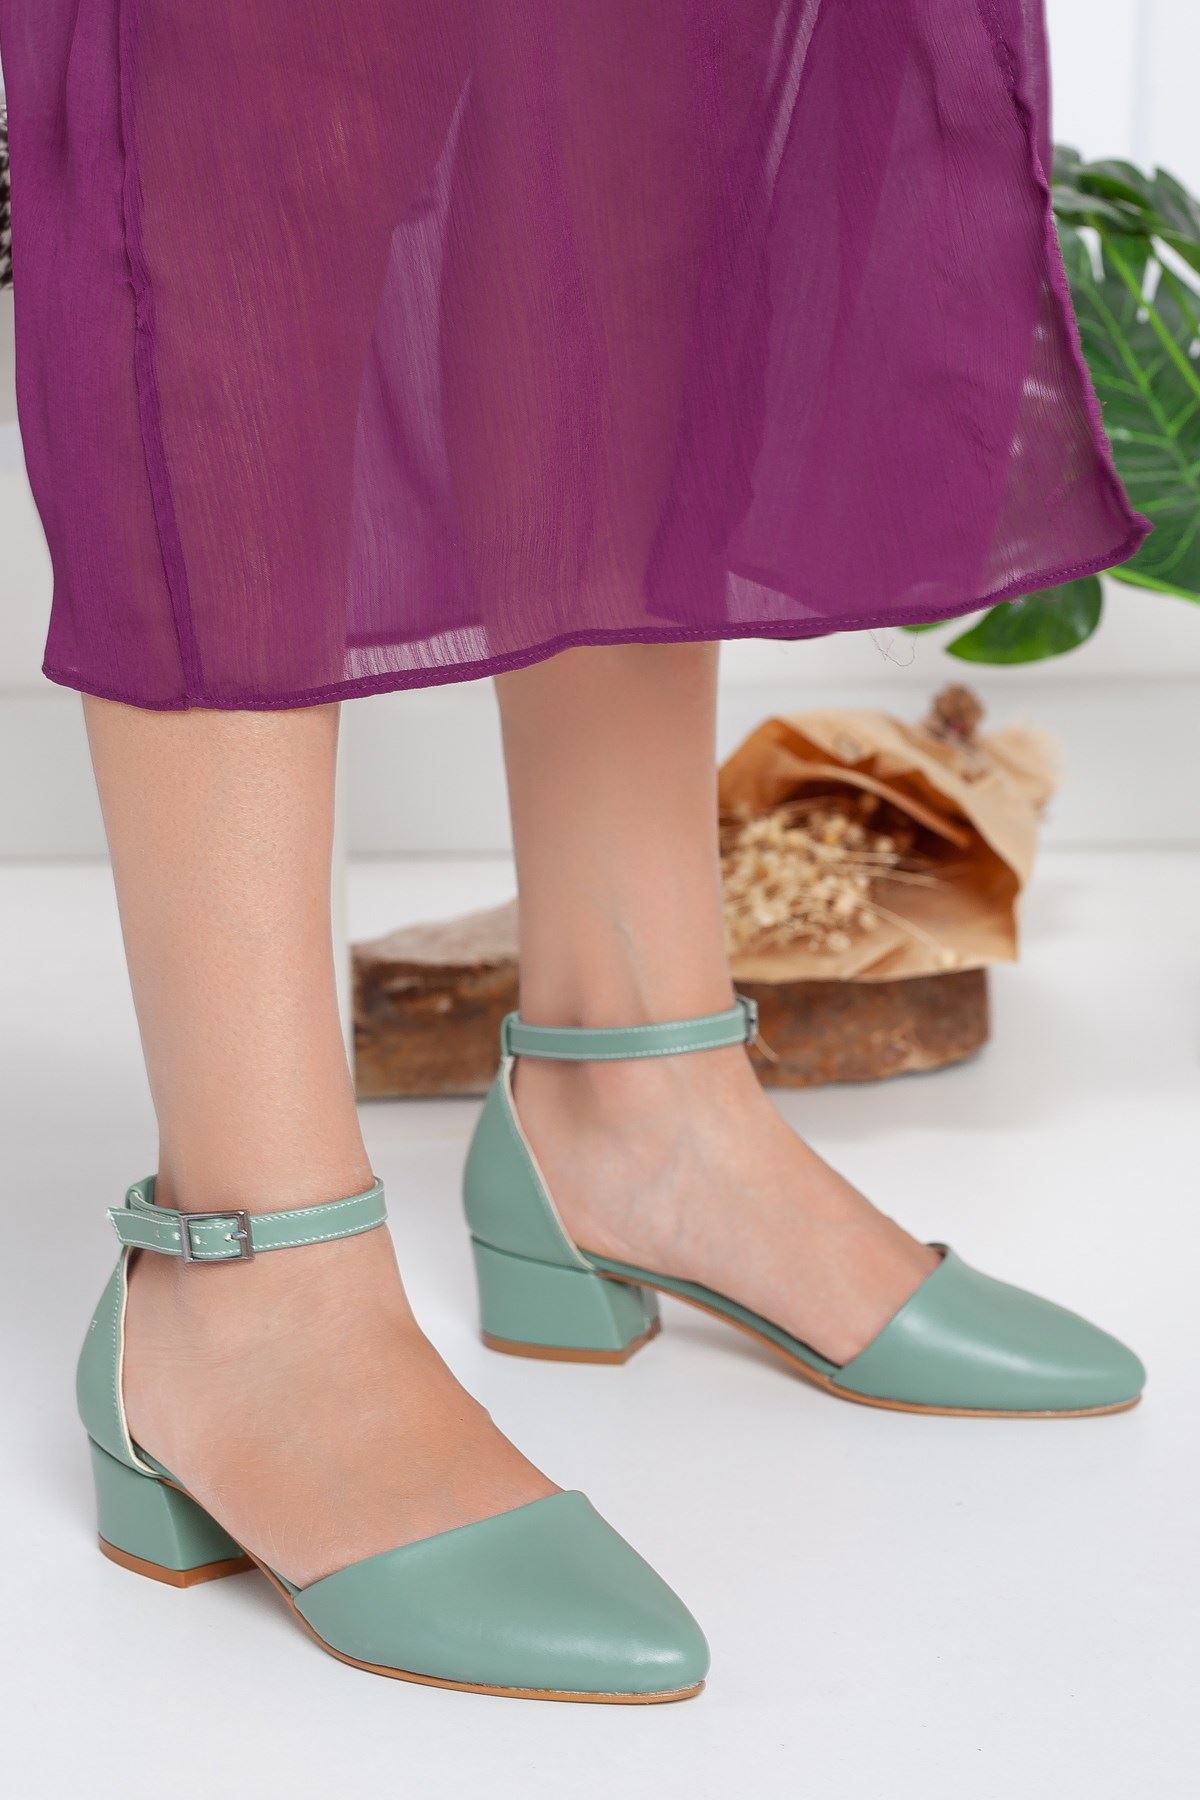 Dary Topuklu Yeşil Cilt Ayakkabı